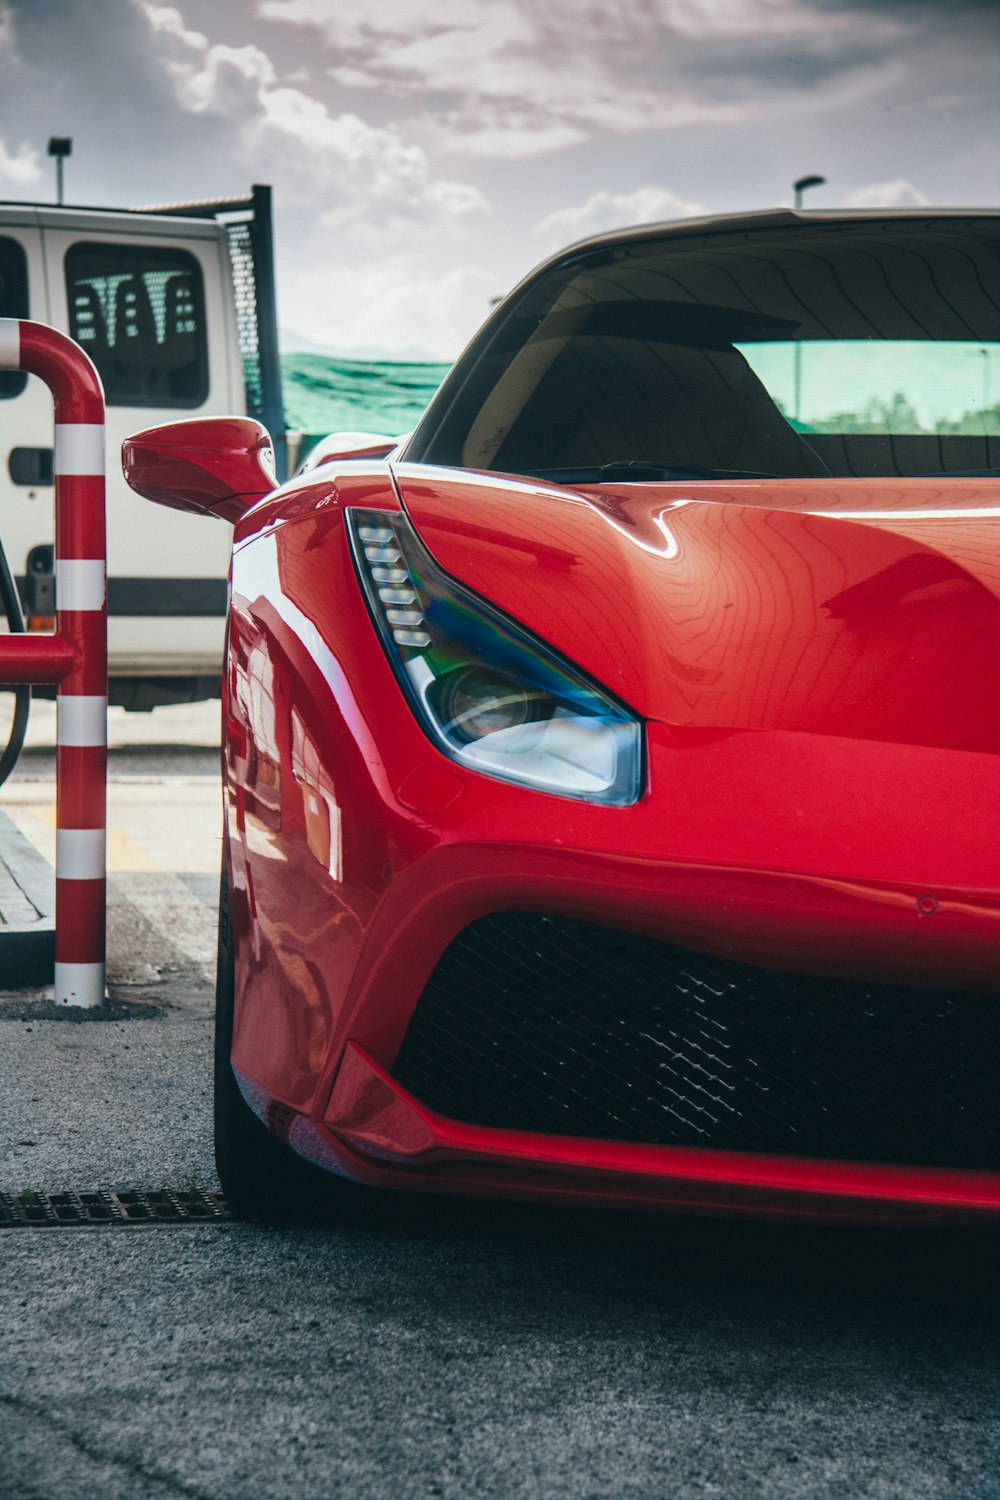 Un coche deportivo rojo estacionado en una gasolinera